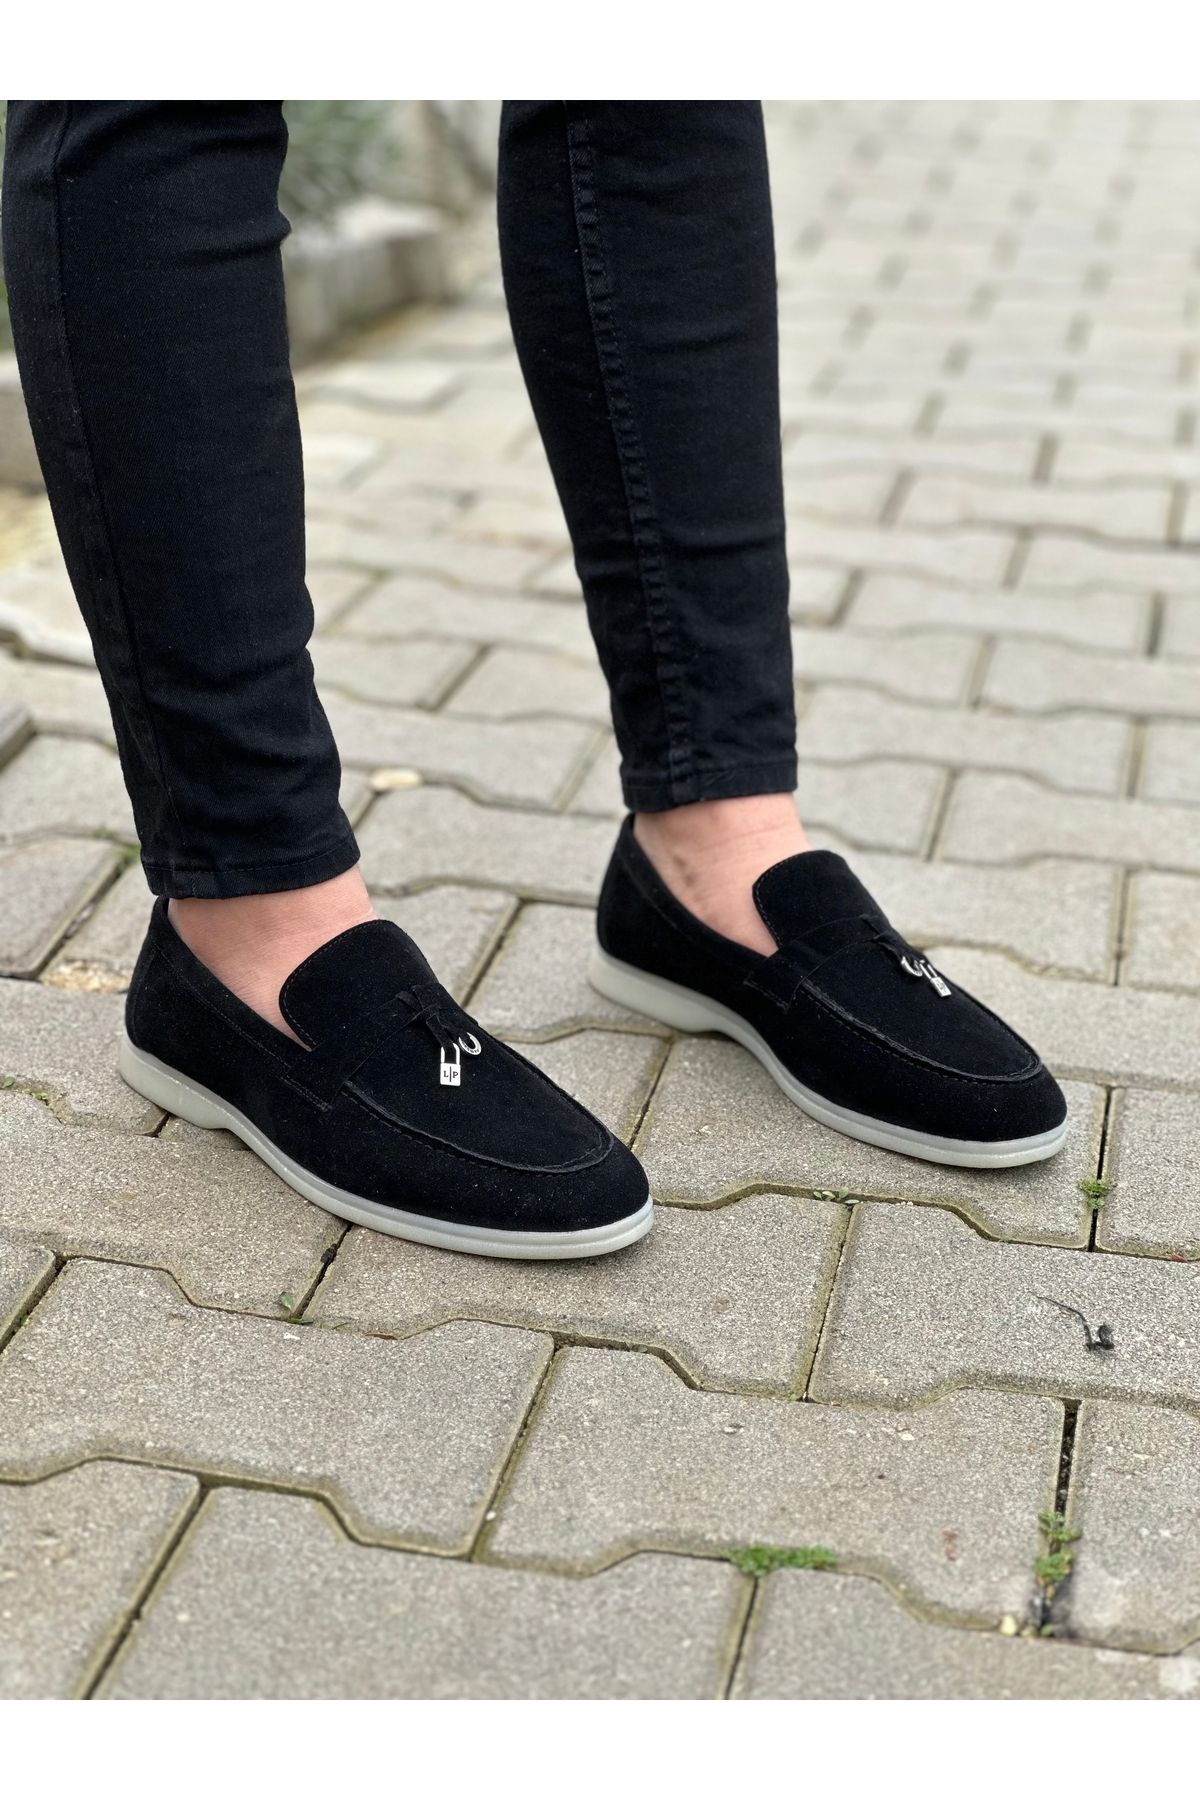 Erkek Siyah Süet Loafer Ayakkabı,Klasik Ayakkabı,Yazlık Ayakkabı